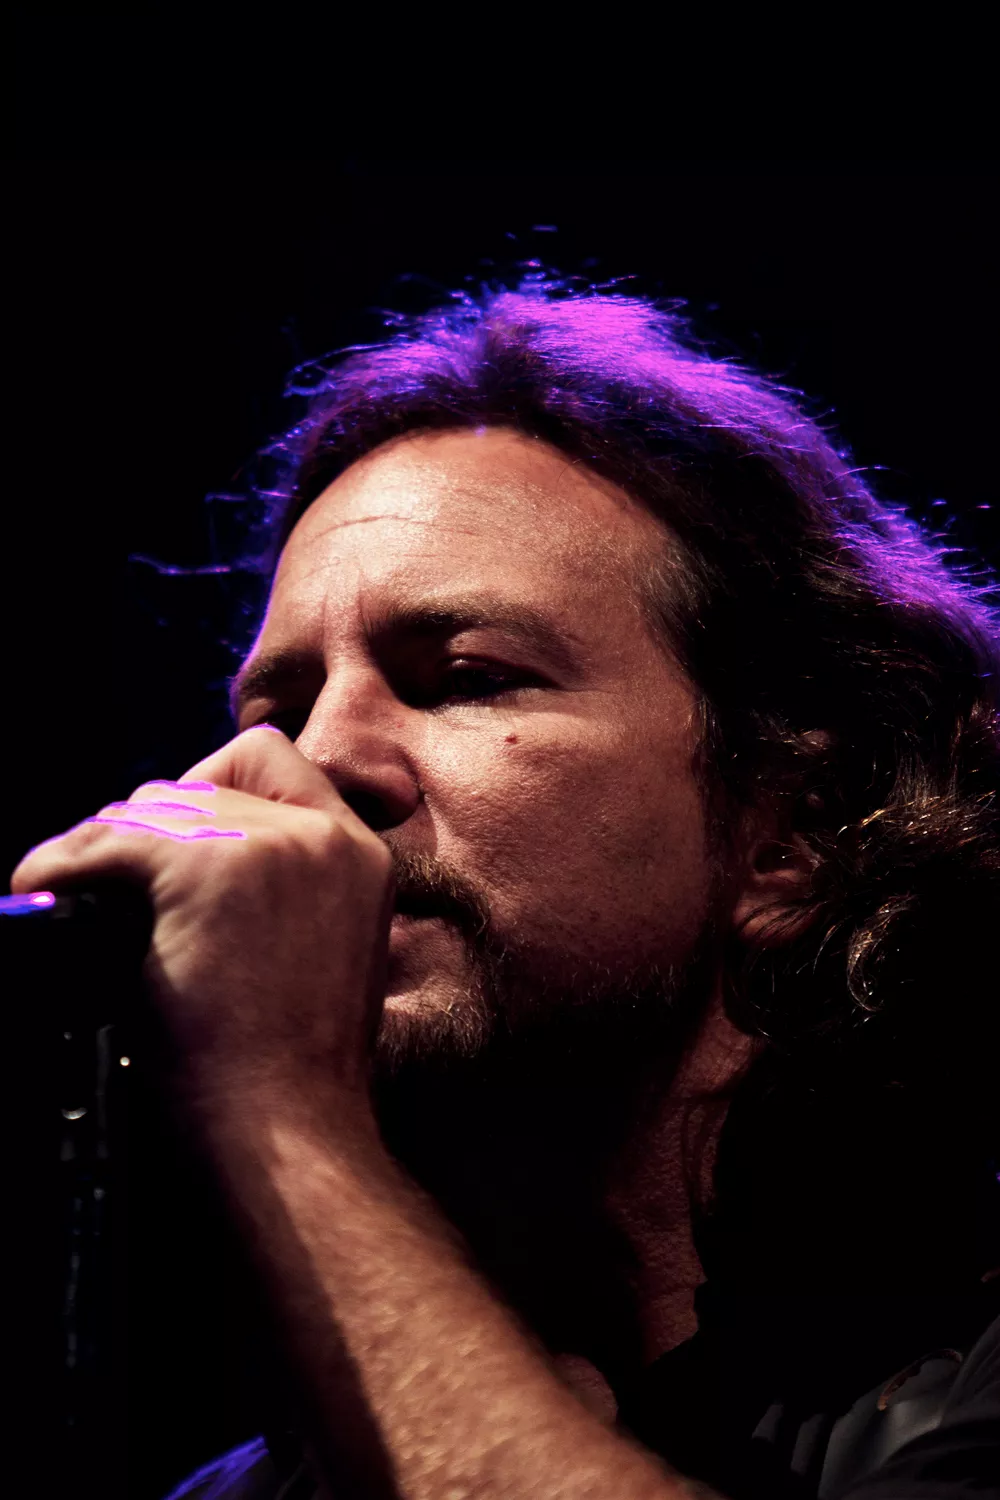 Pearl Jams "Jeremy" inspireret af selvmordstragedie – nu taler de efterladte ud